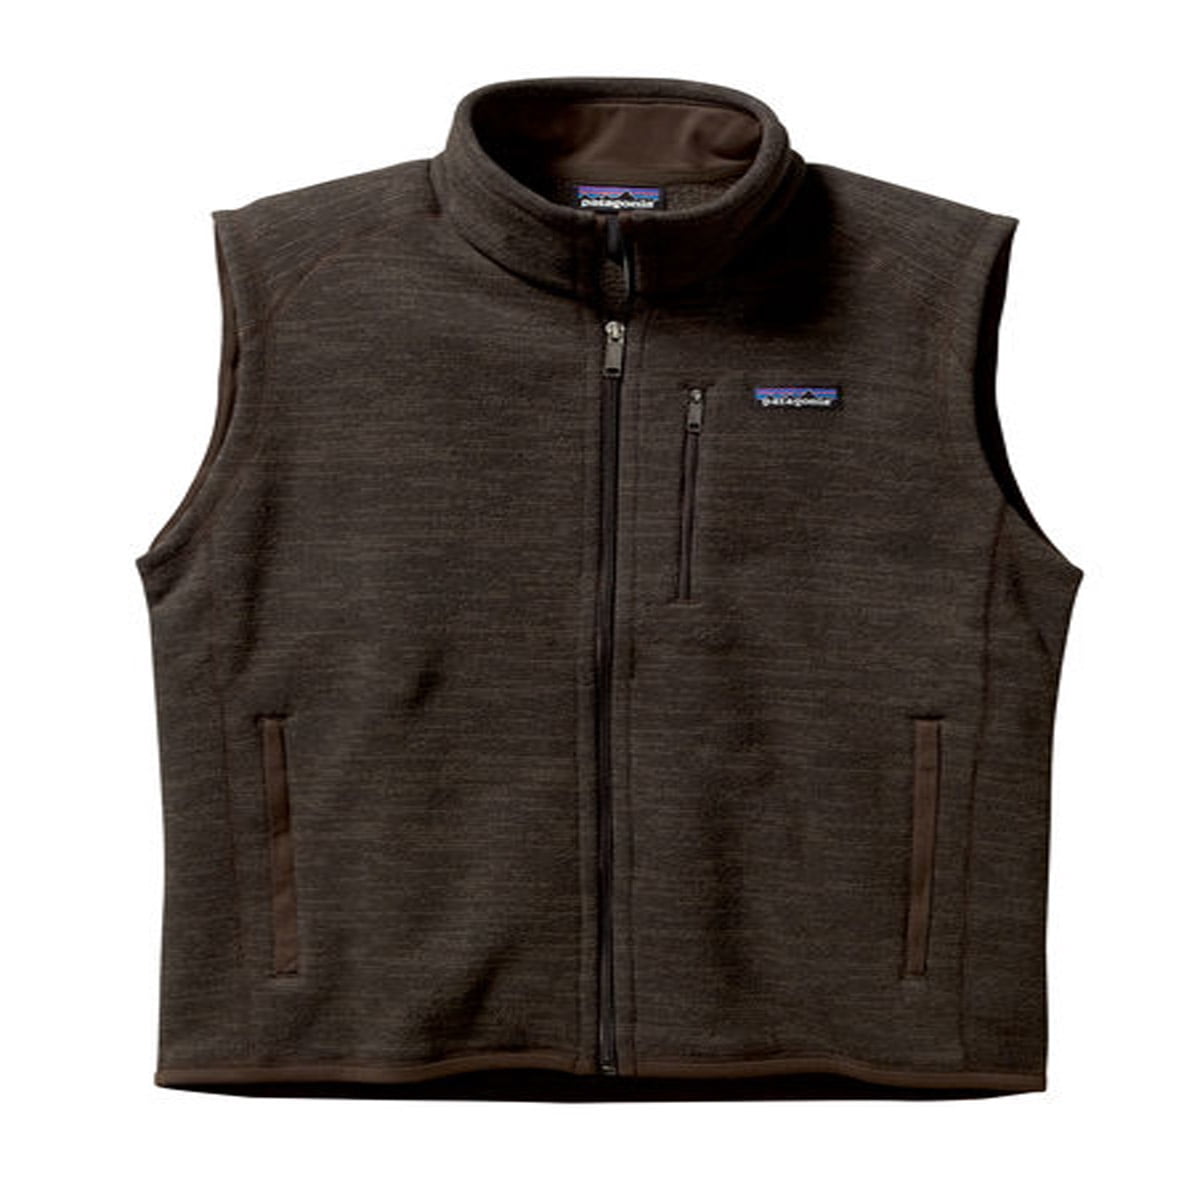 Patagonia Men's Better Sweater Vest Dark Walnut 2XL - Walmart.com ...